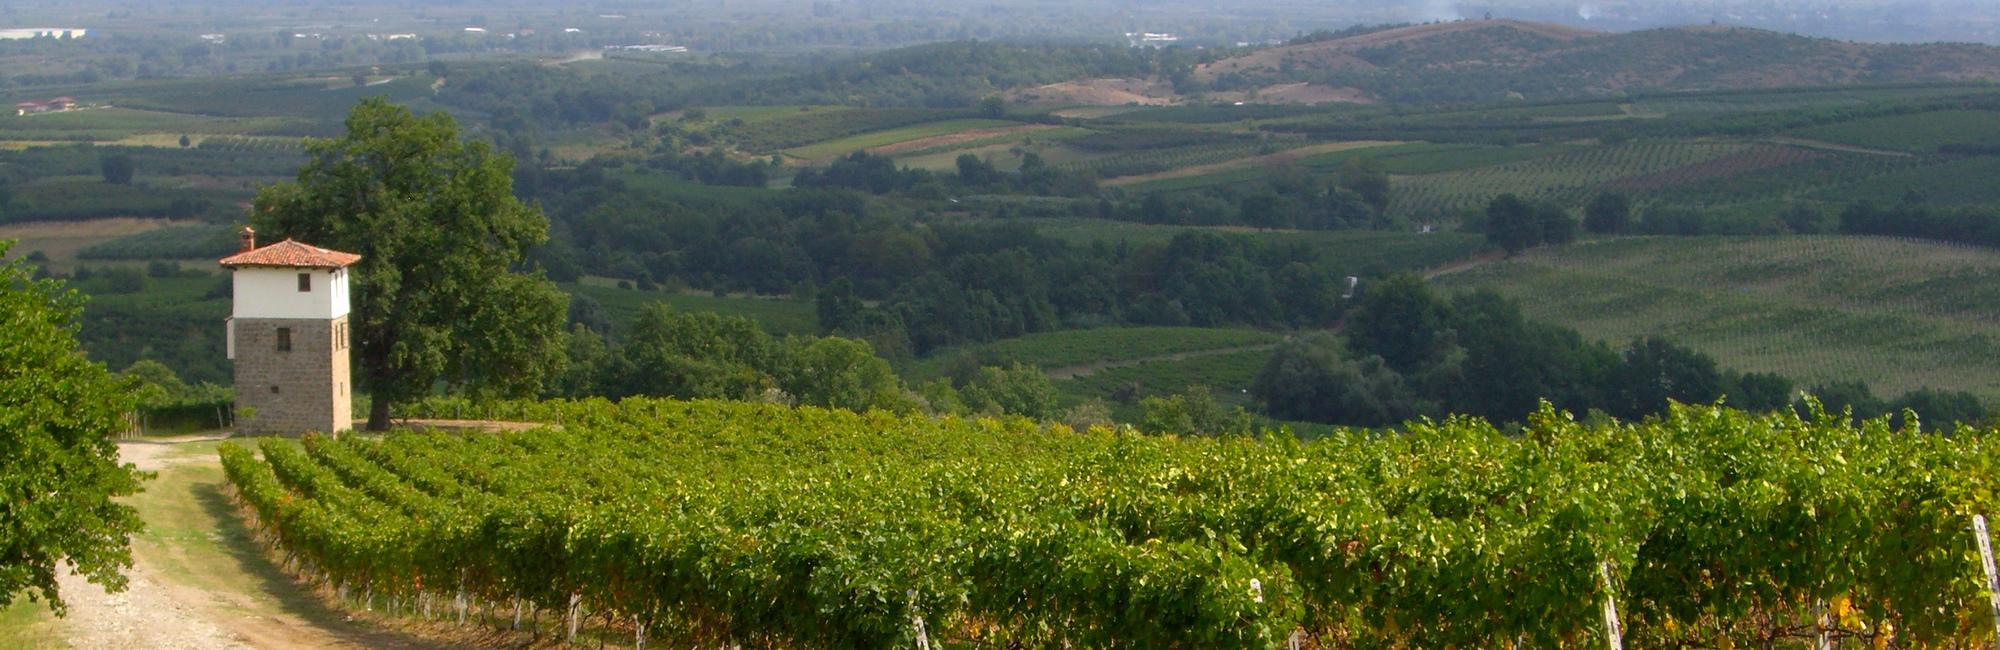 Kir-Yiannis winery